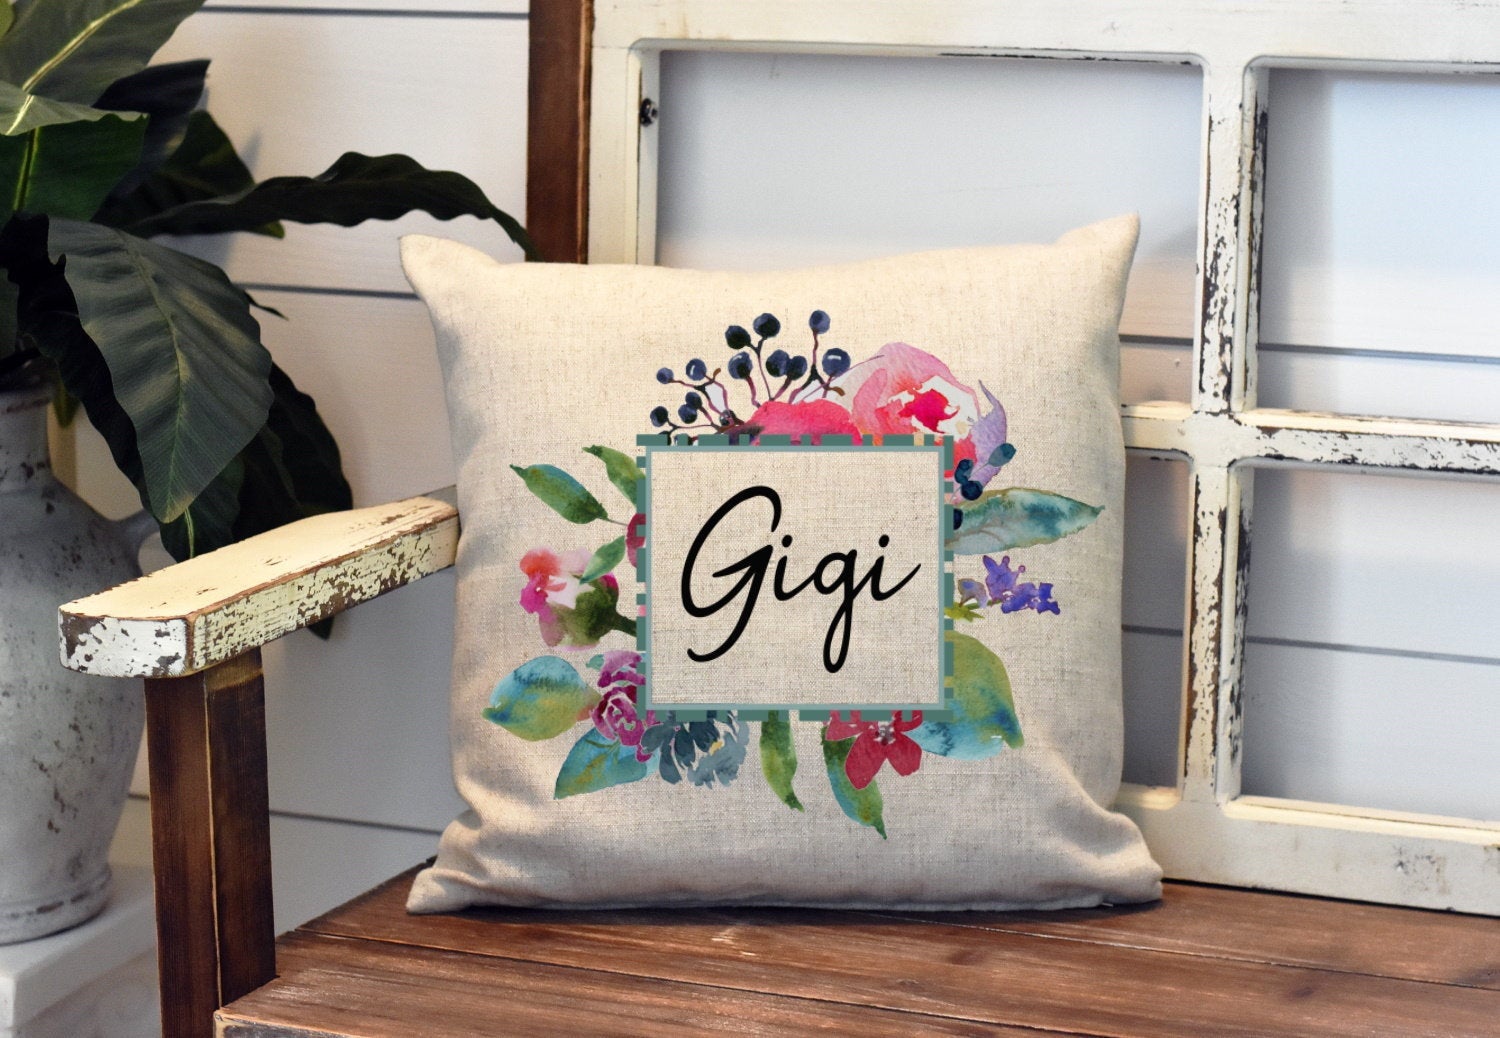 Gigi Grandma Watercolor Pillow Cover - Grandma Pillow - Gigi Decorations Farmhouse Decor Throw Pillow Cover